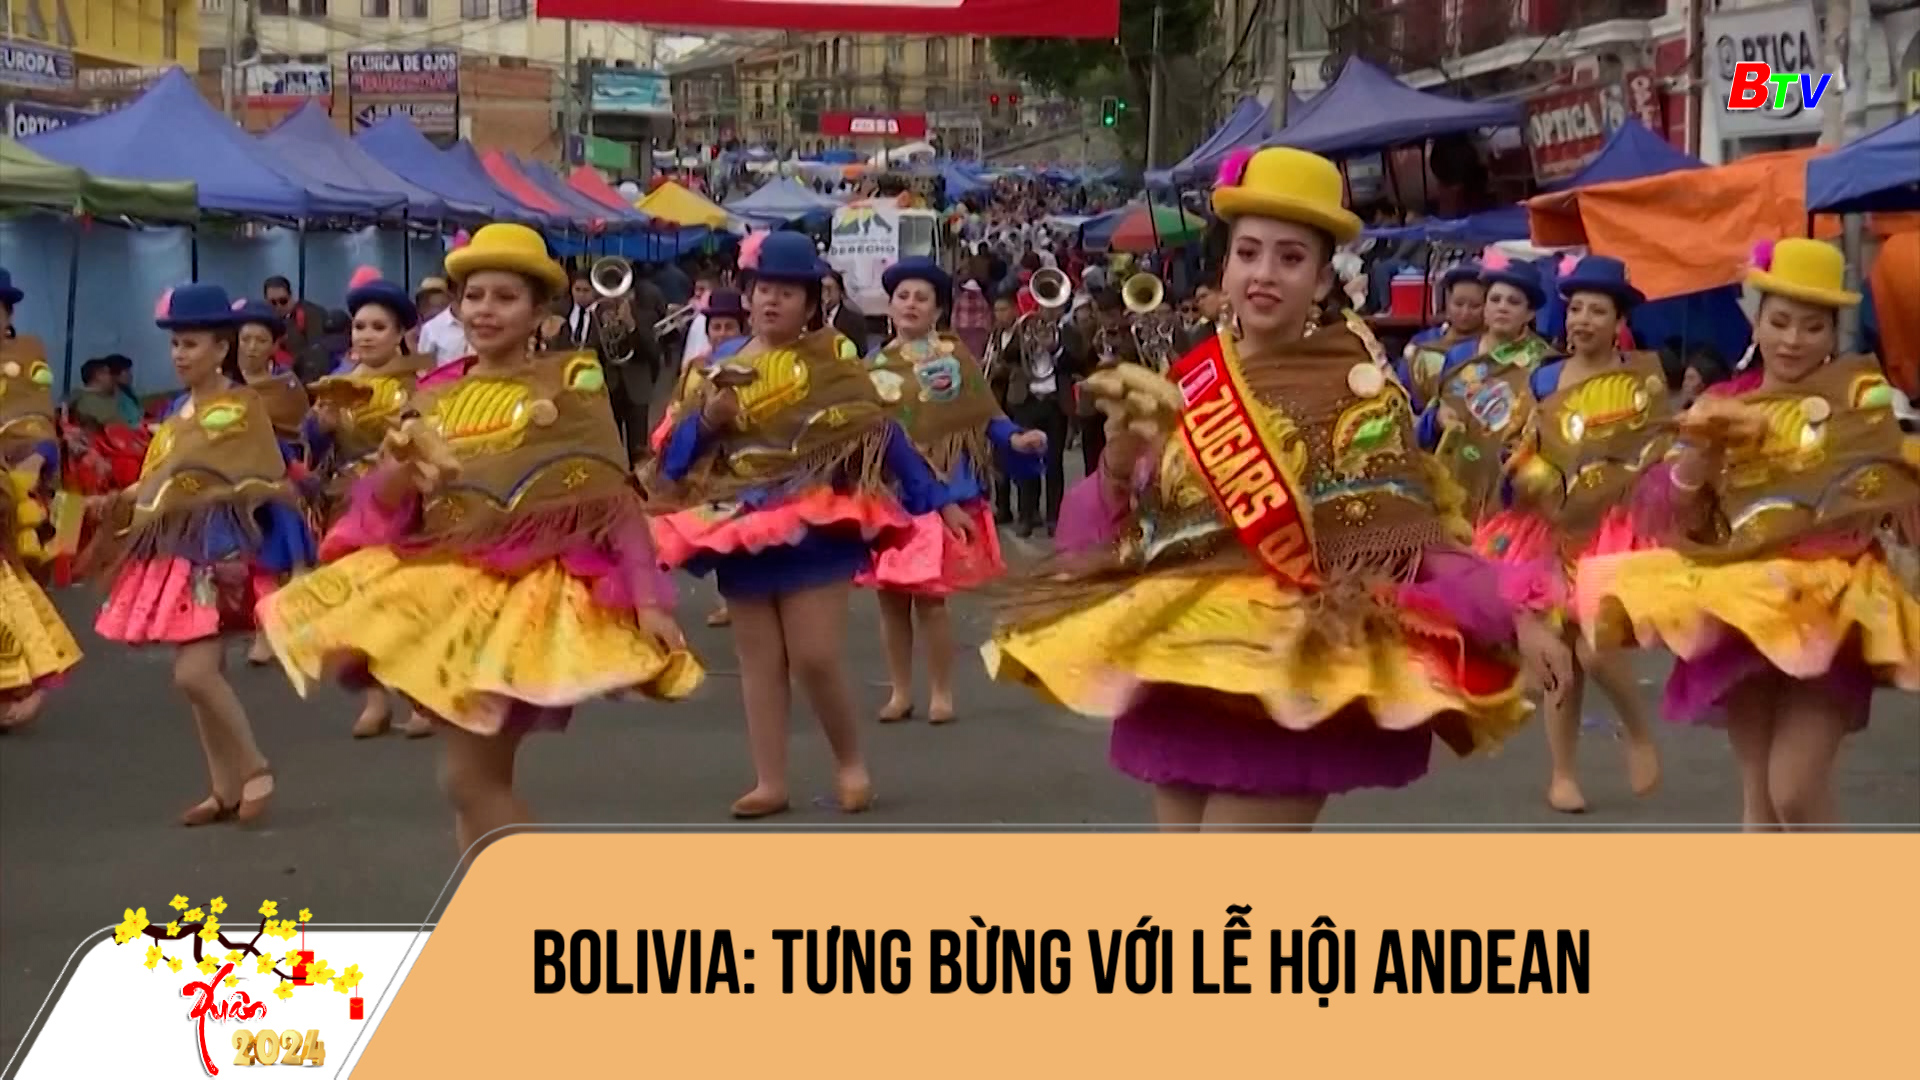 Bolivia: tưng bừng với Lễ hội Andean